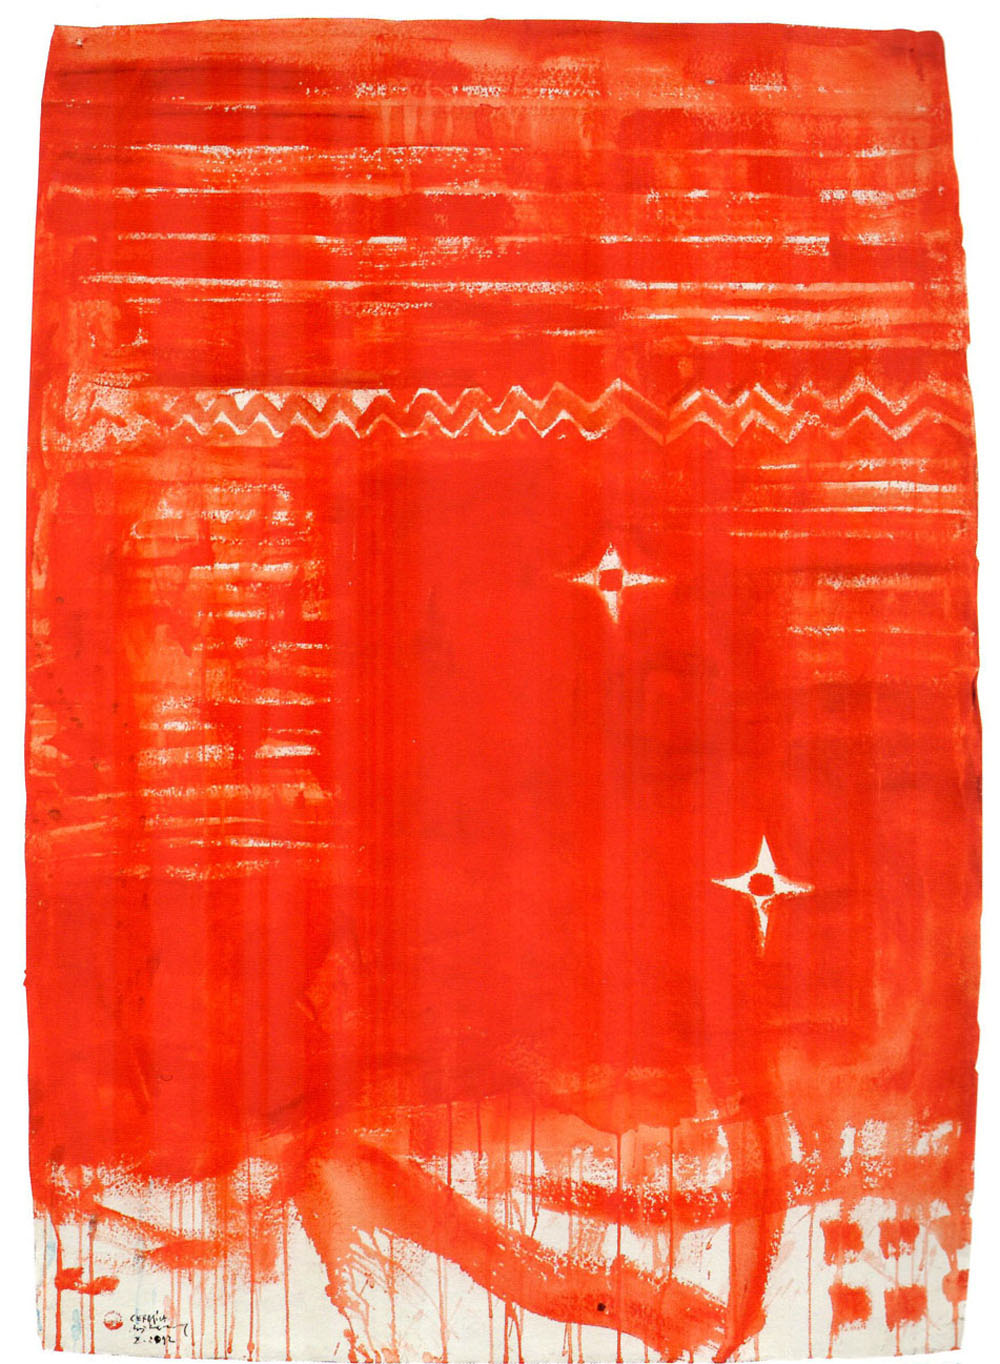 Pizzi Cannella, Rosso ceramica, 2011, tecnica mista su carta, cm 130x90